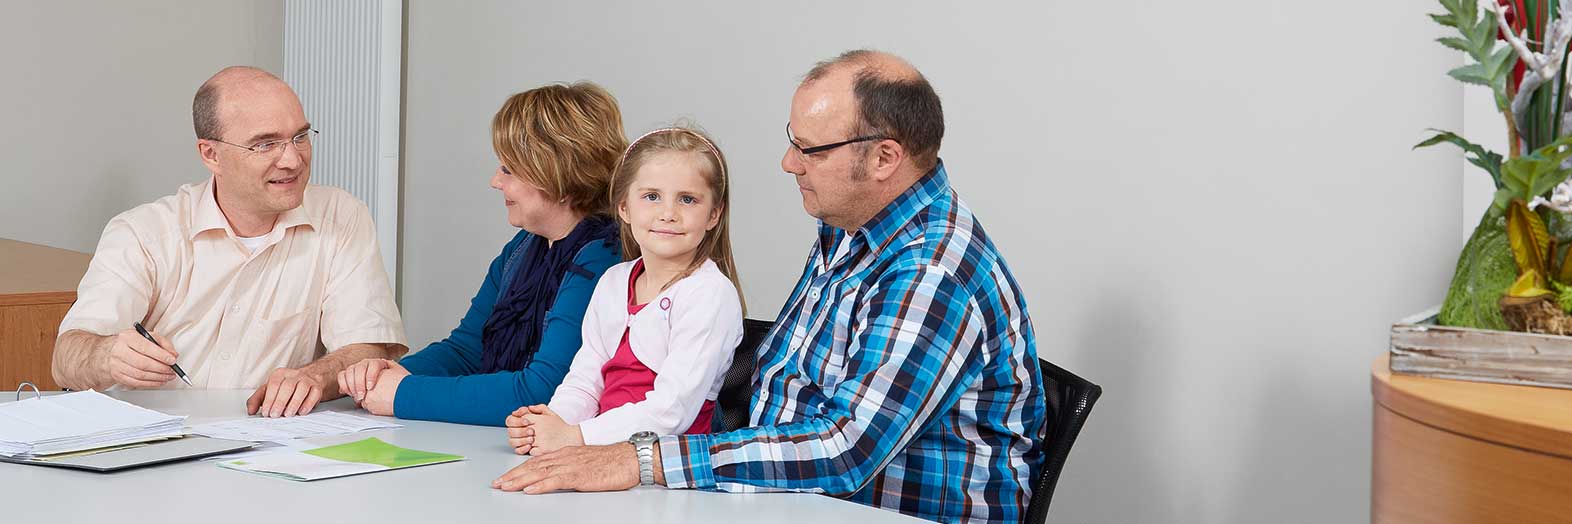 Steuerberater Thorsten Laakmann berät eine Familie